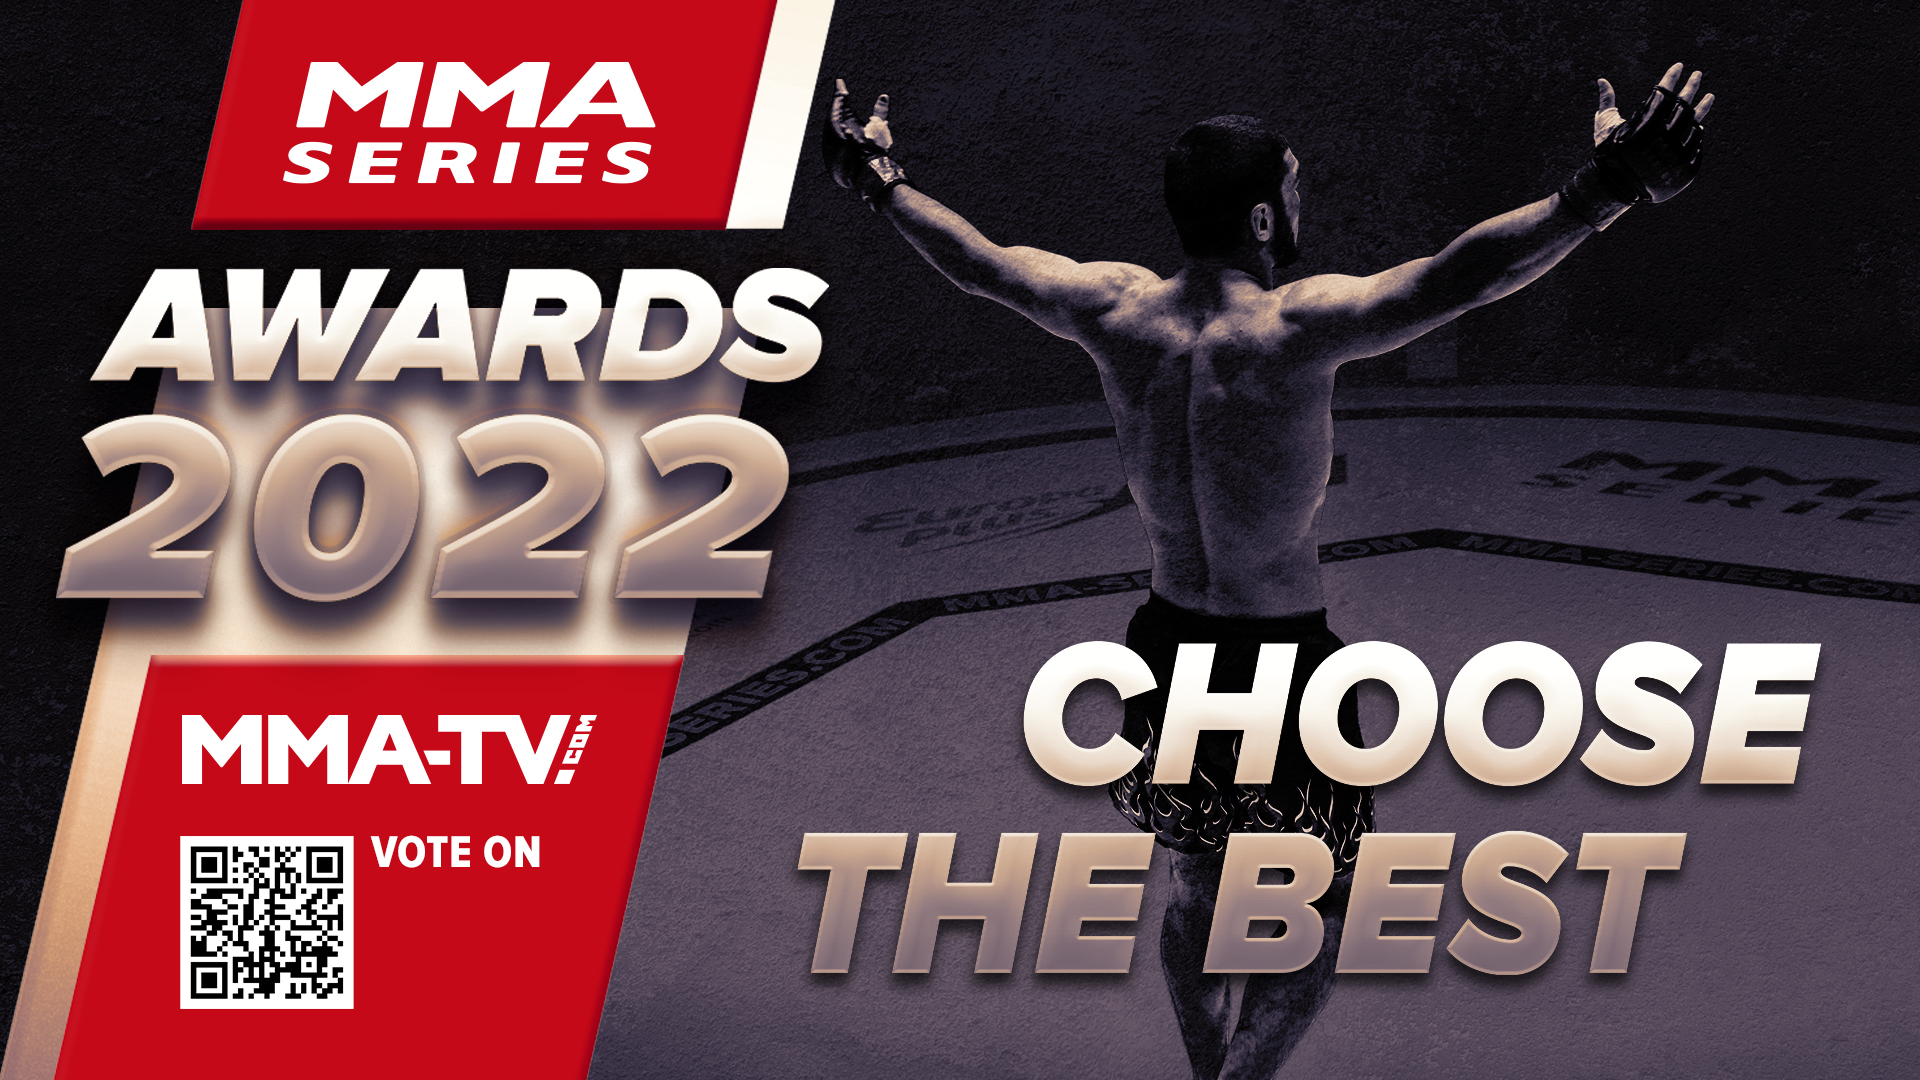 MMA-TV Awards 2022 MMA Series official website